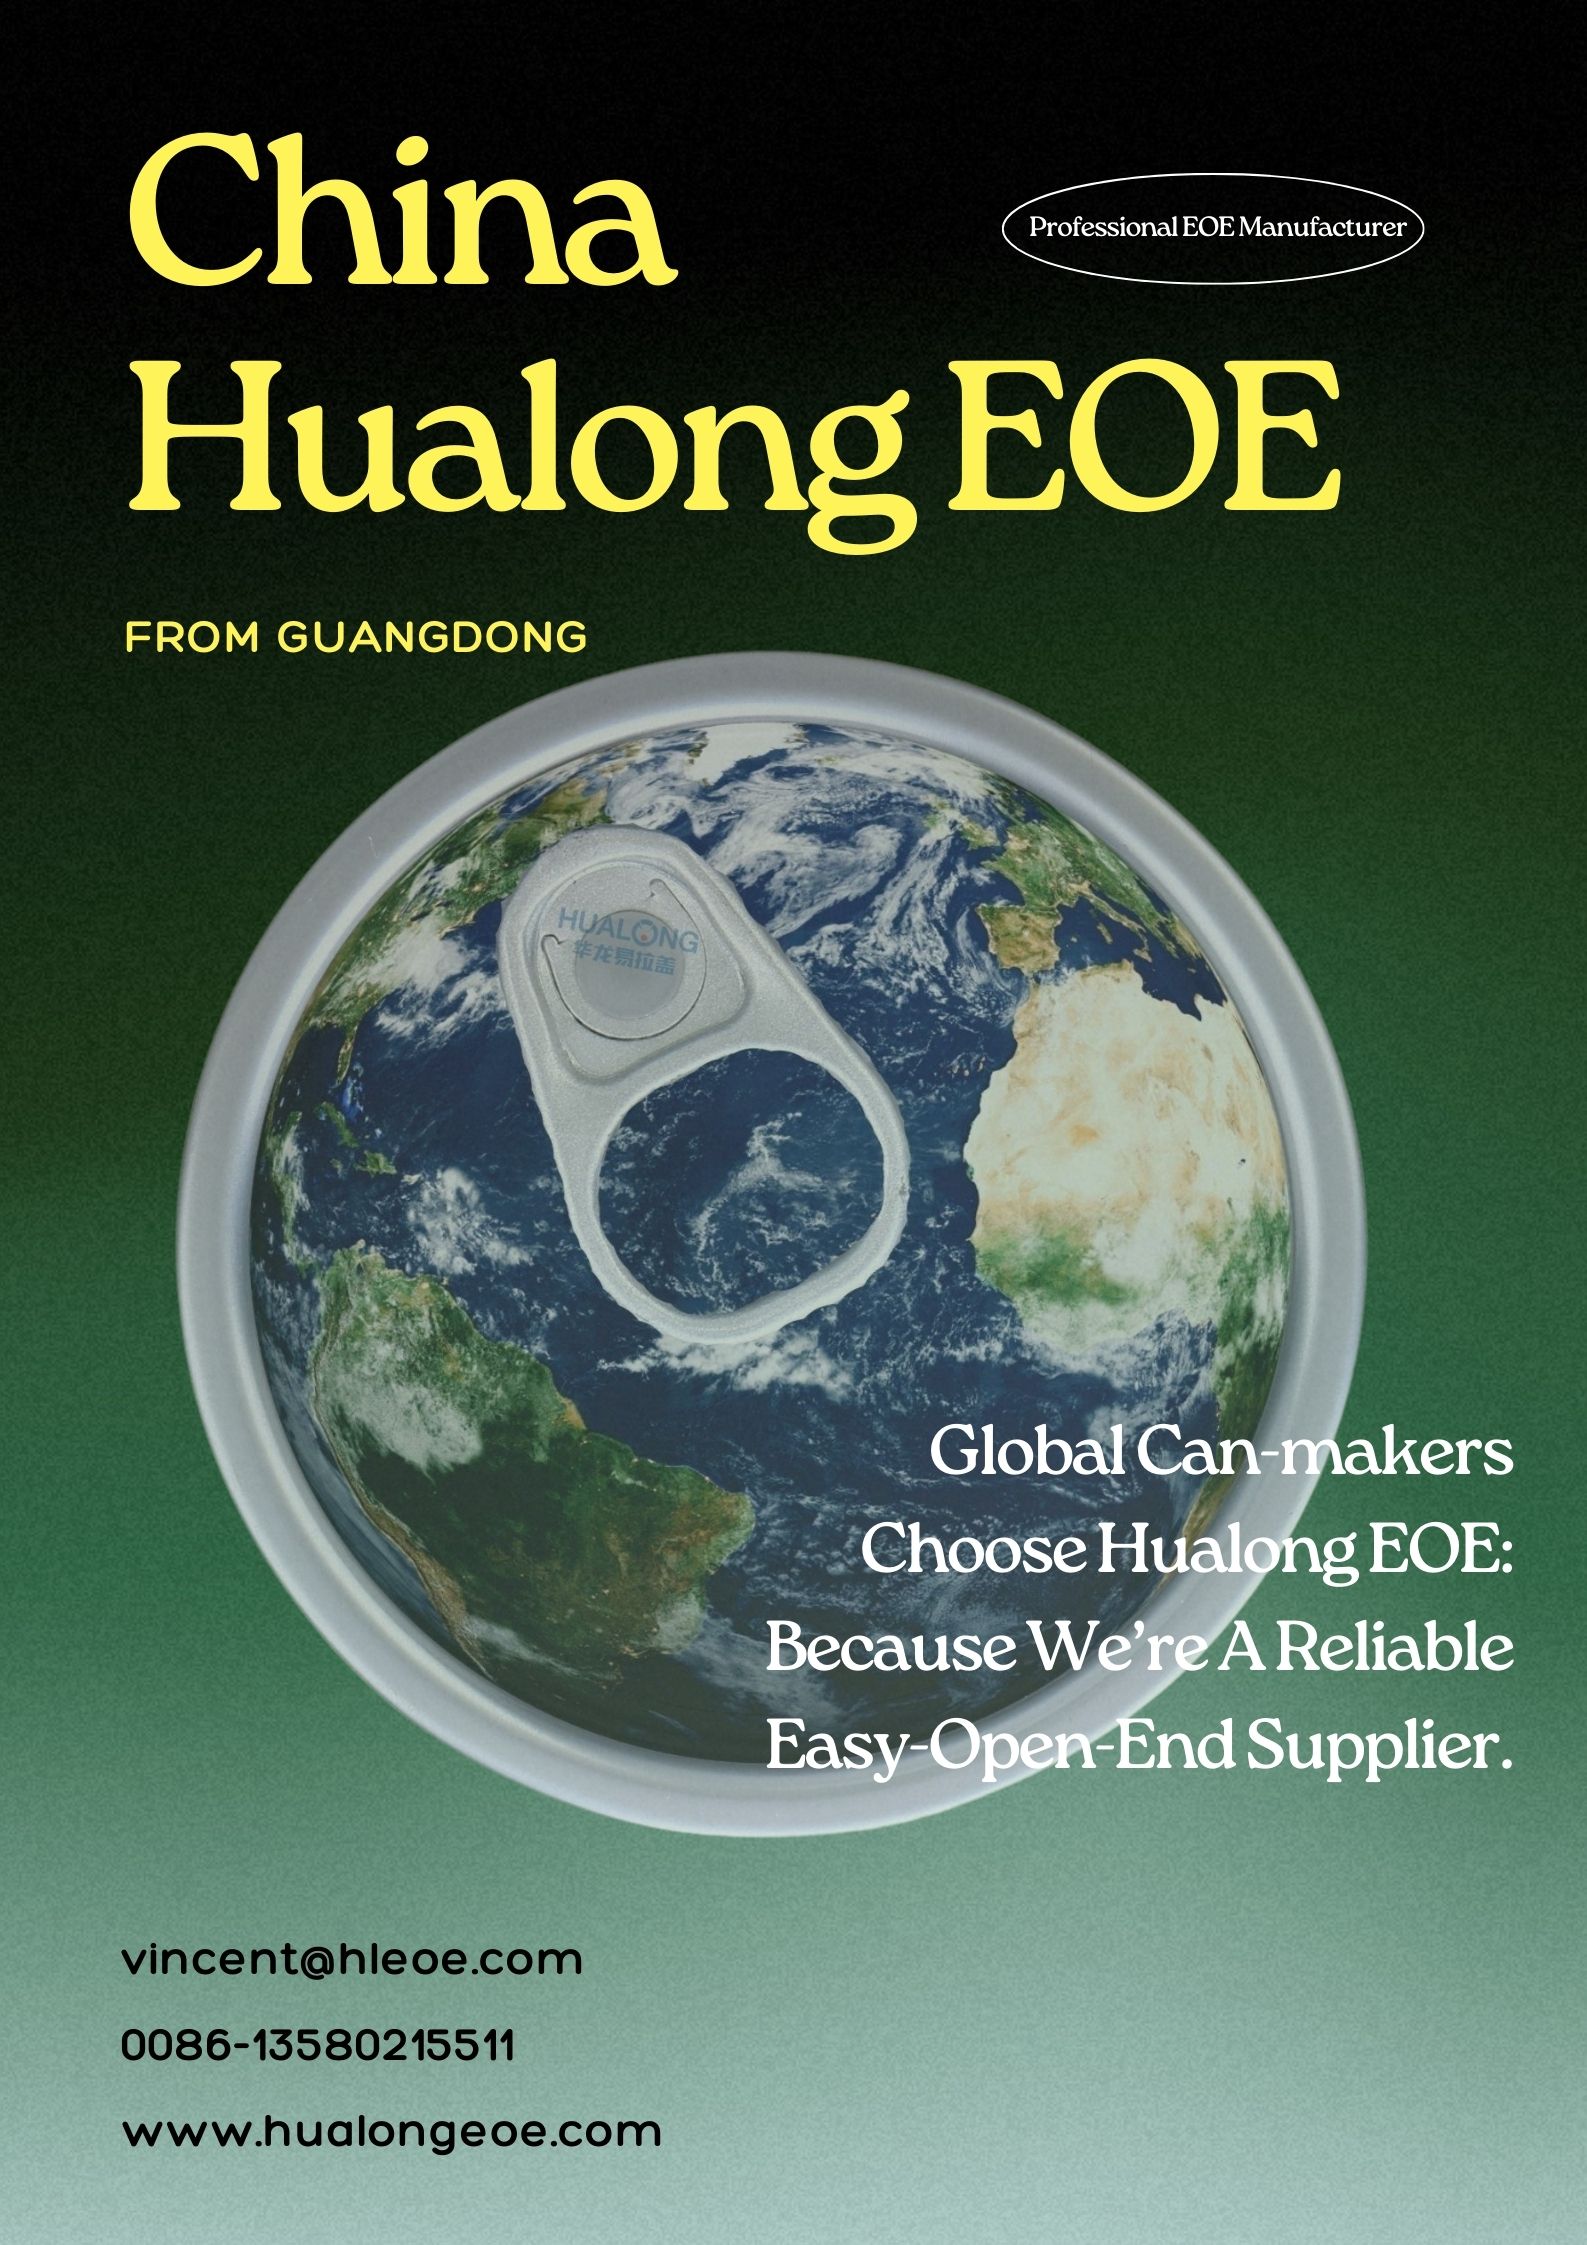 Affidabilità tal-Prodott minn Hualong EOE